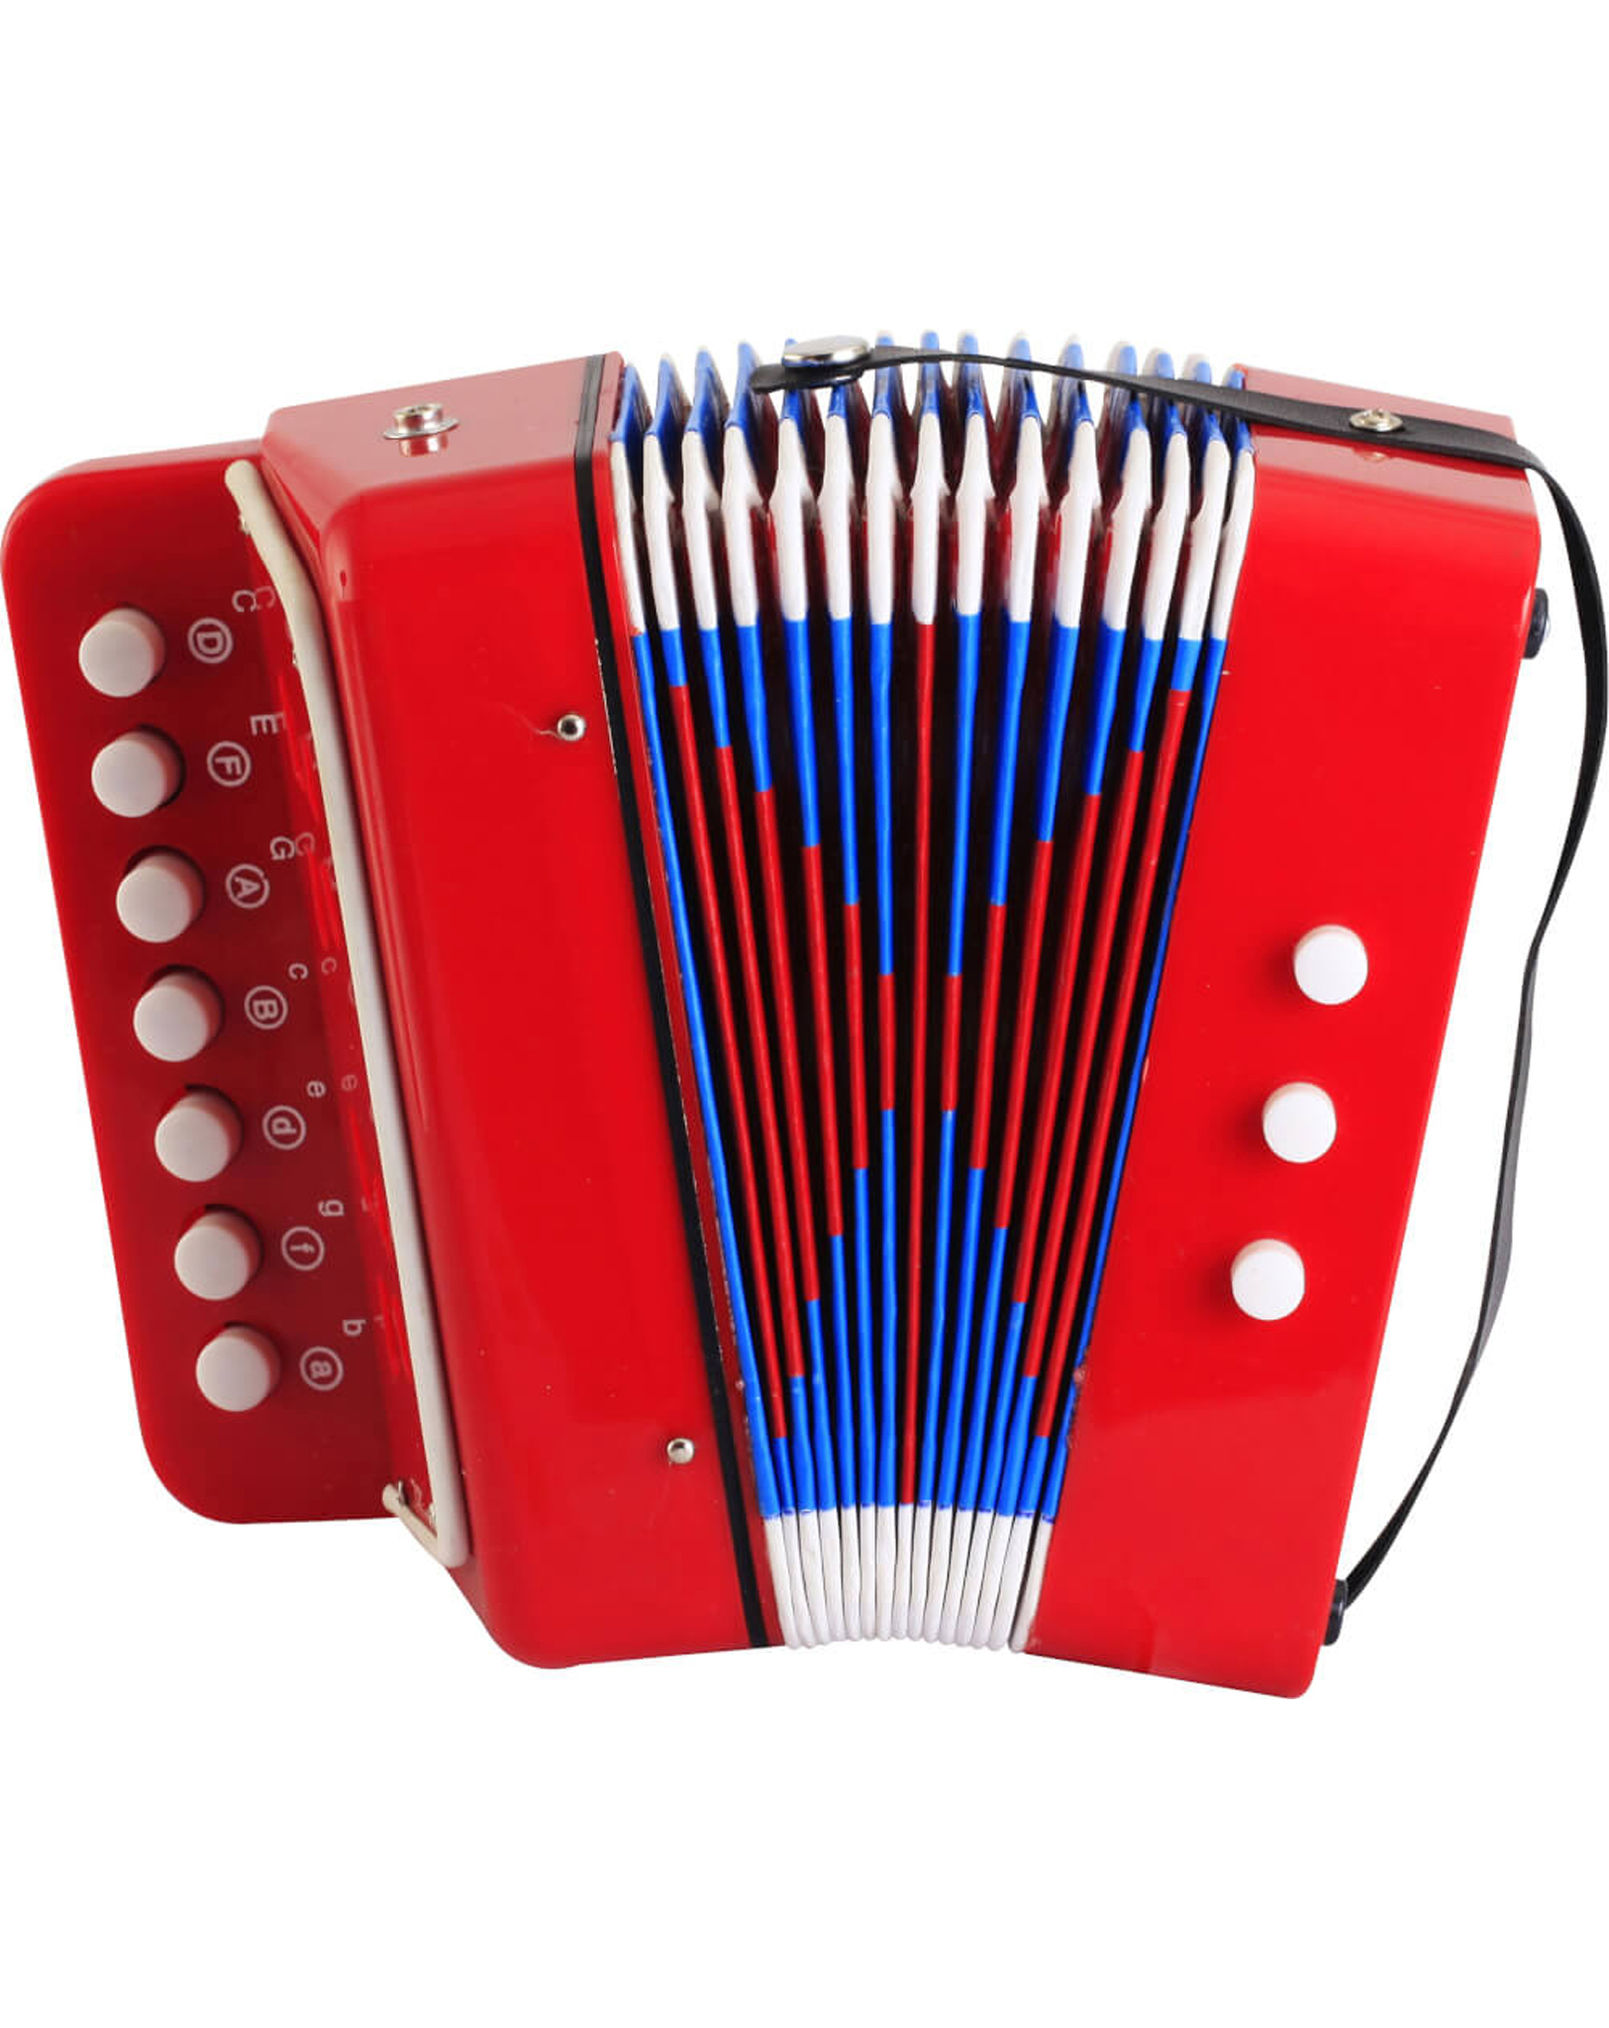 Musikinstrument AKKORDEON in rot kaufen | tausendkind.de